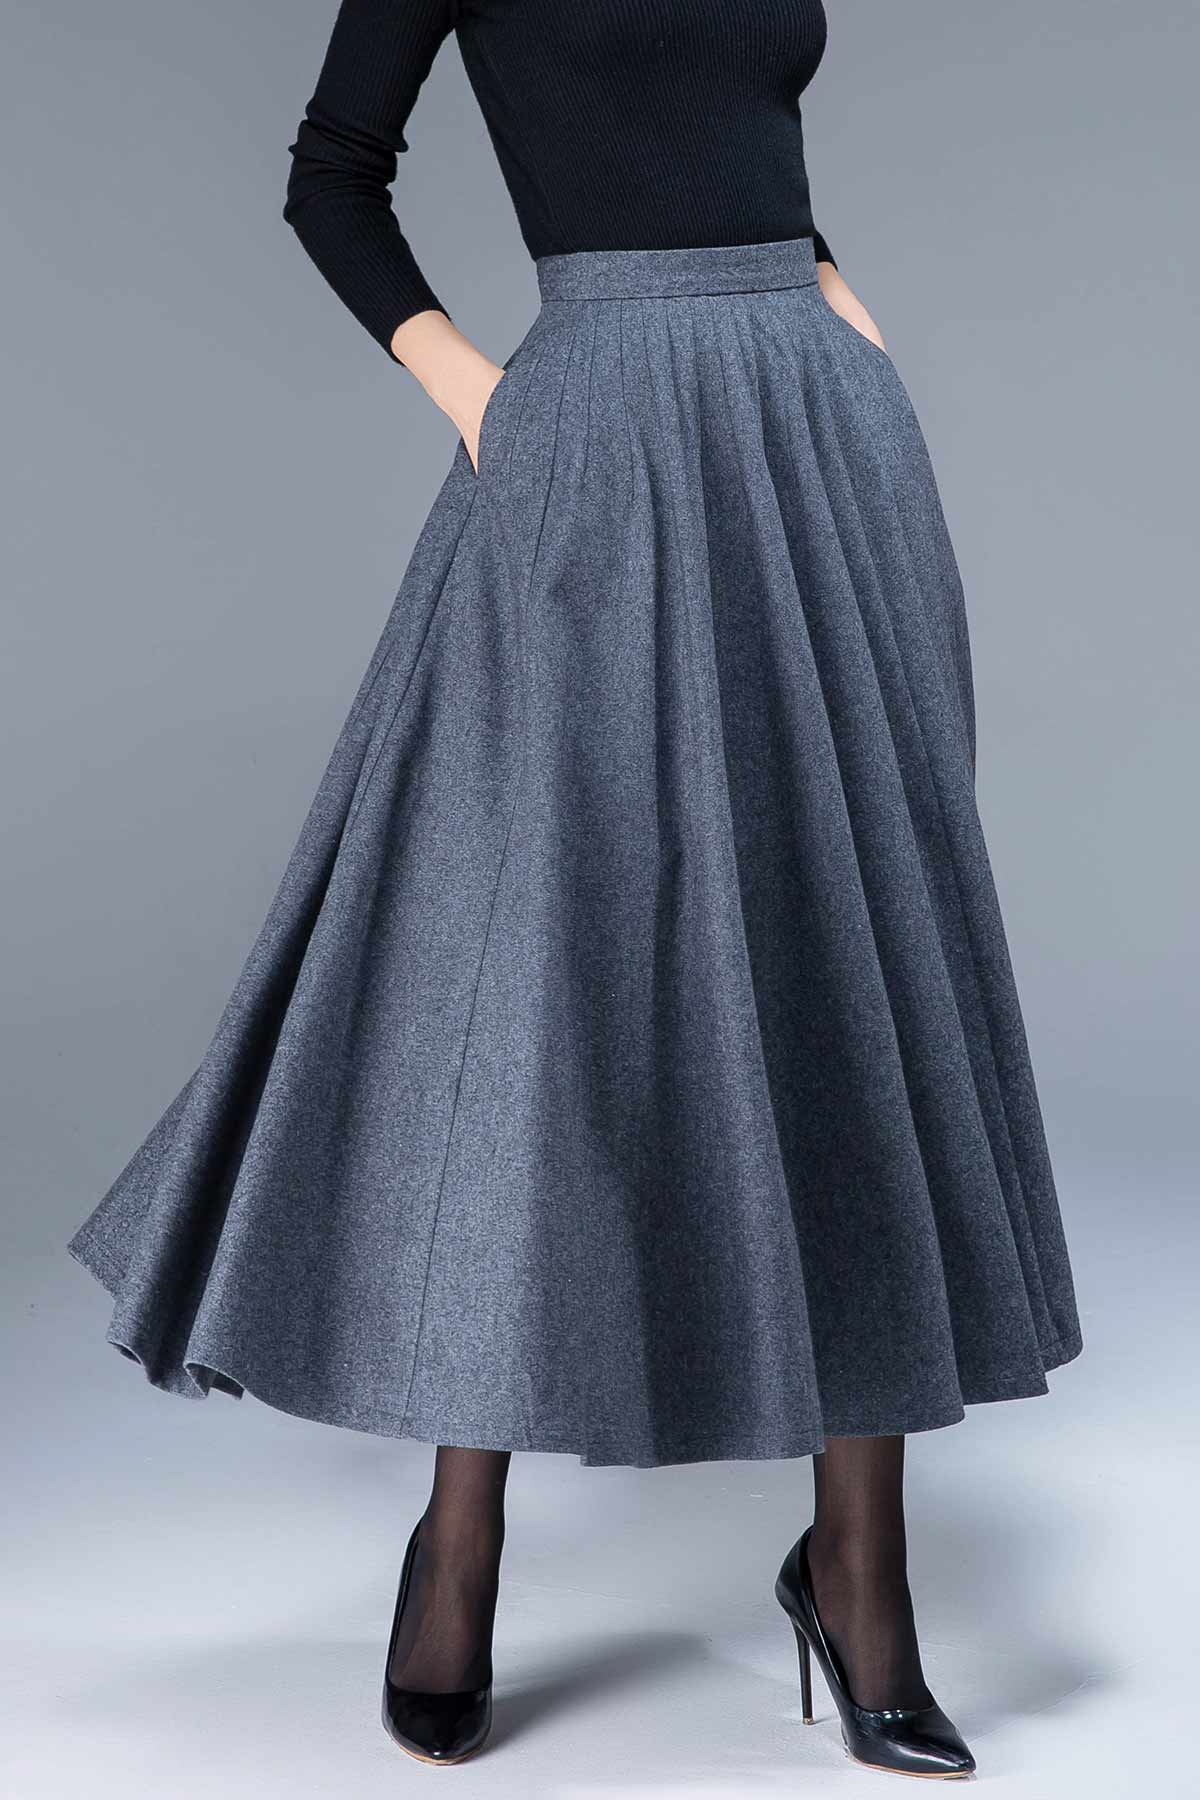 Wool Skirt, Maxi Skirt, Autumn Winter Skirt, Gray Wool Skirt, Long